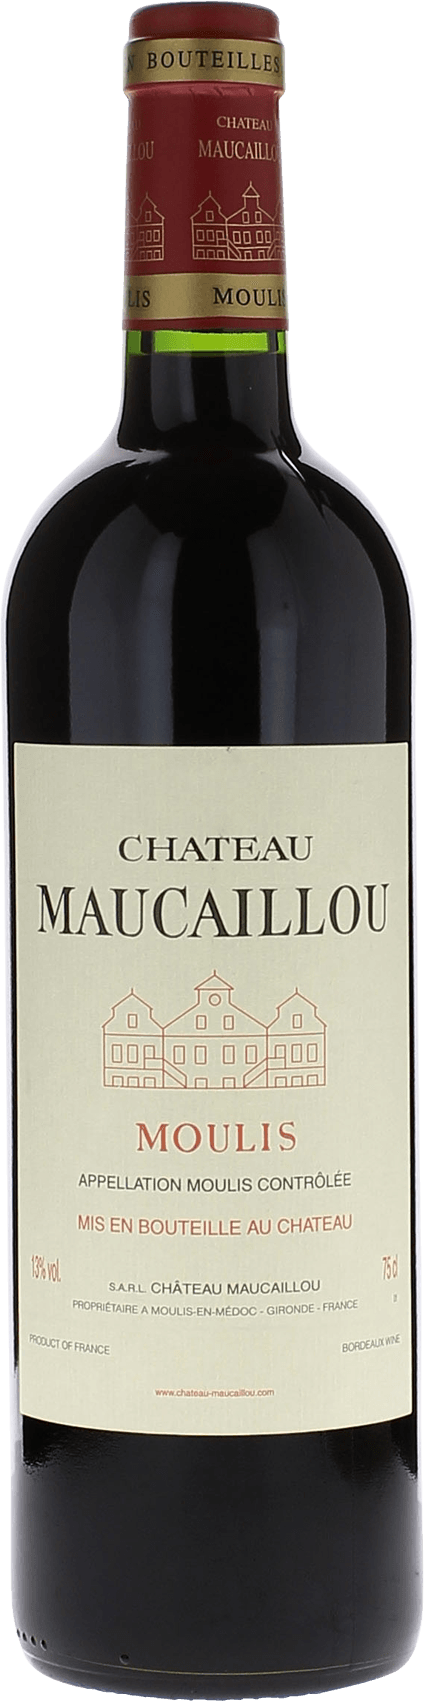 Maucaillou 1997 Cru Bourgeois Suprieur Moulis, Bordeaux rouge